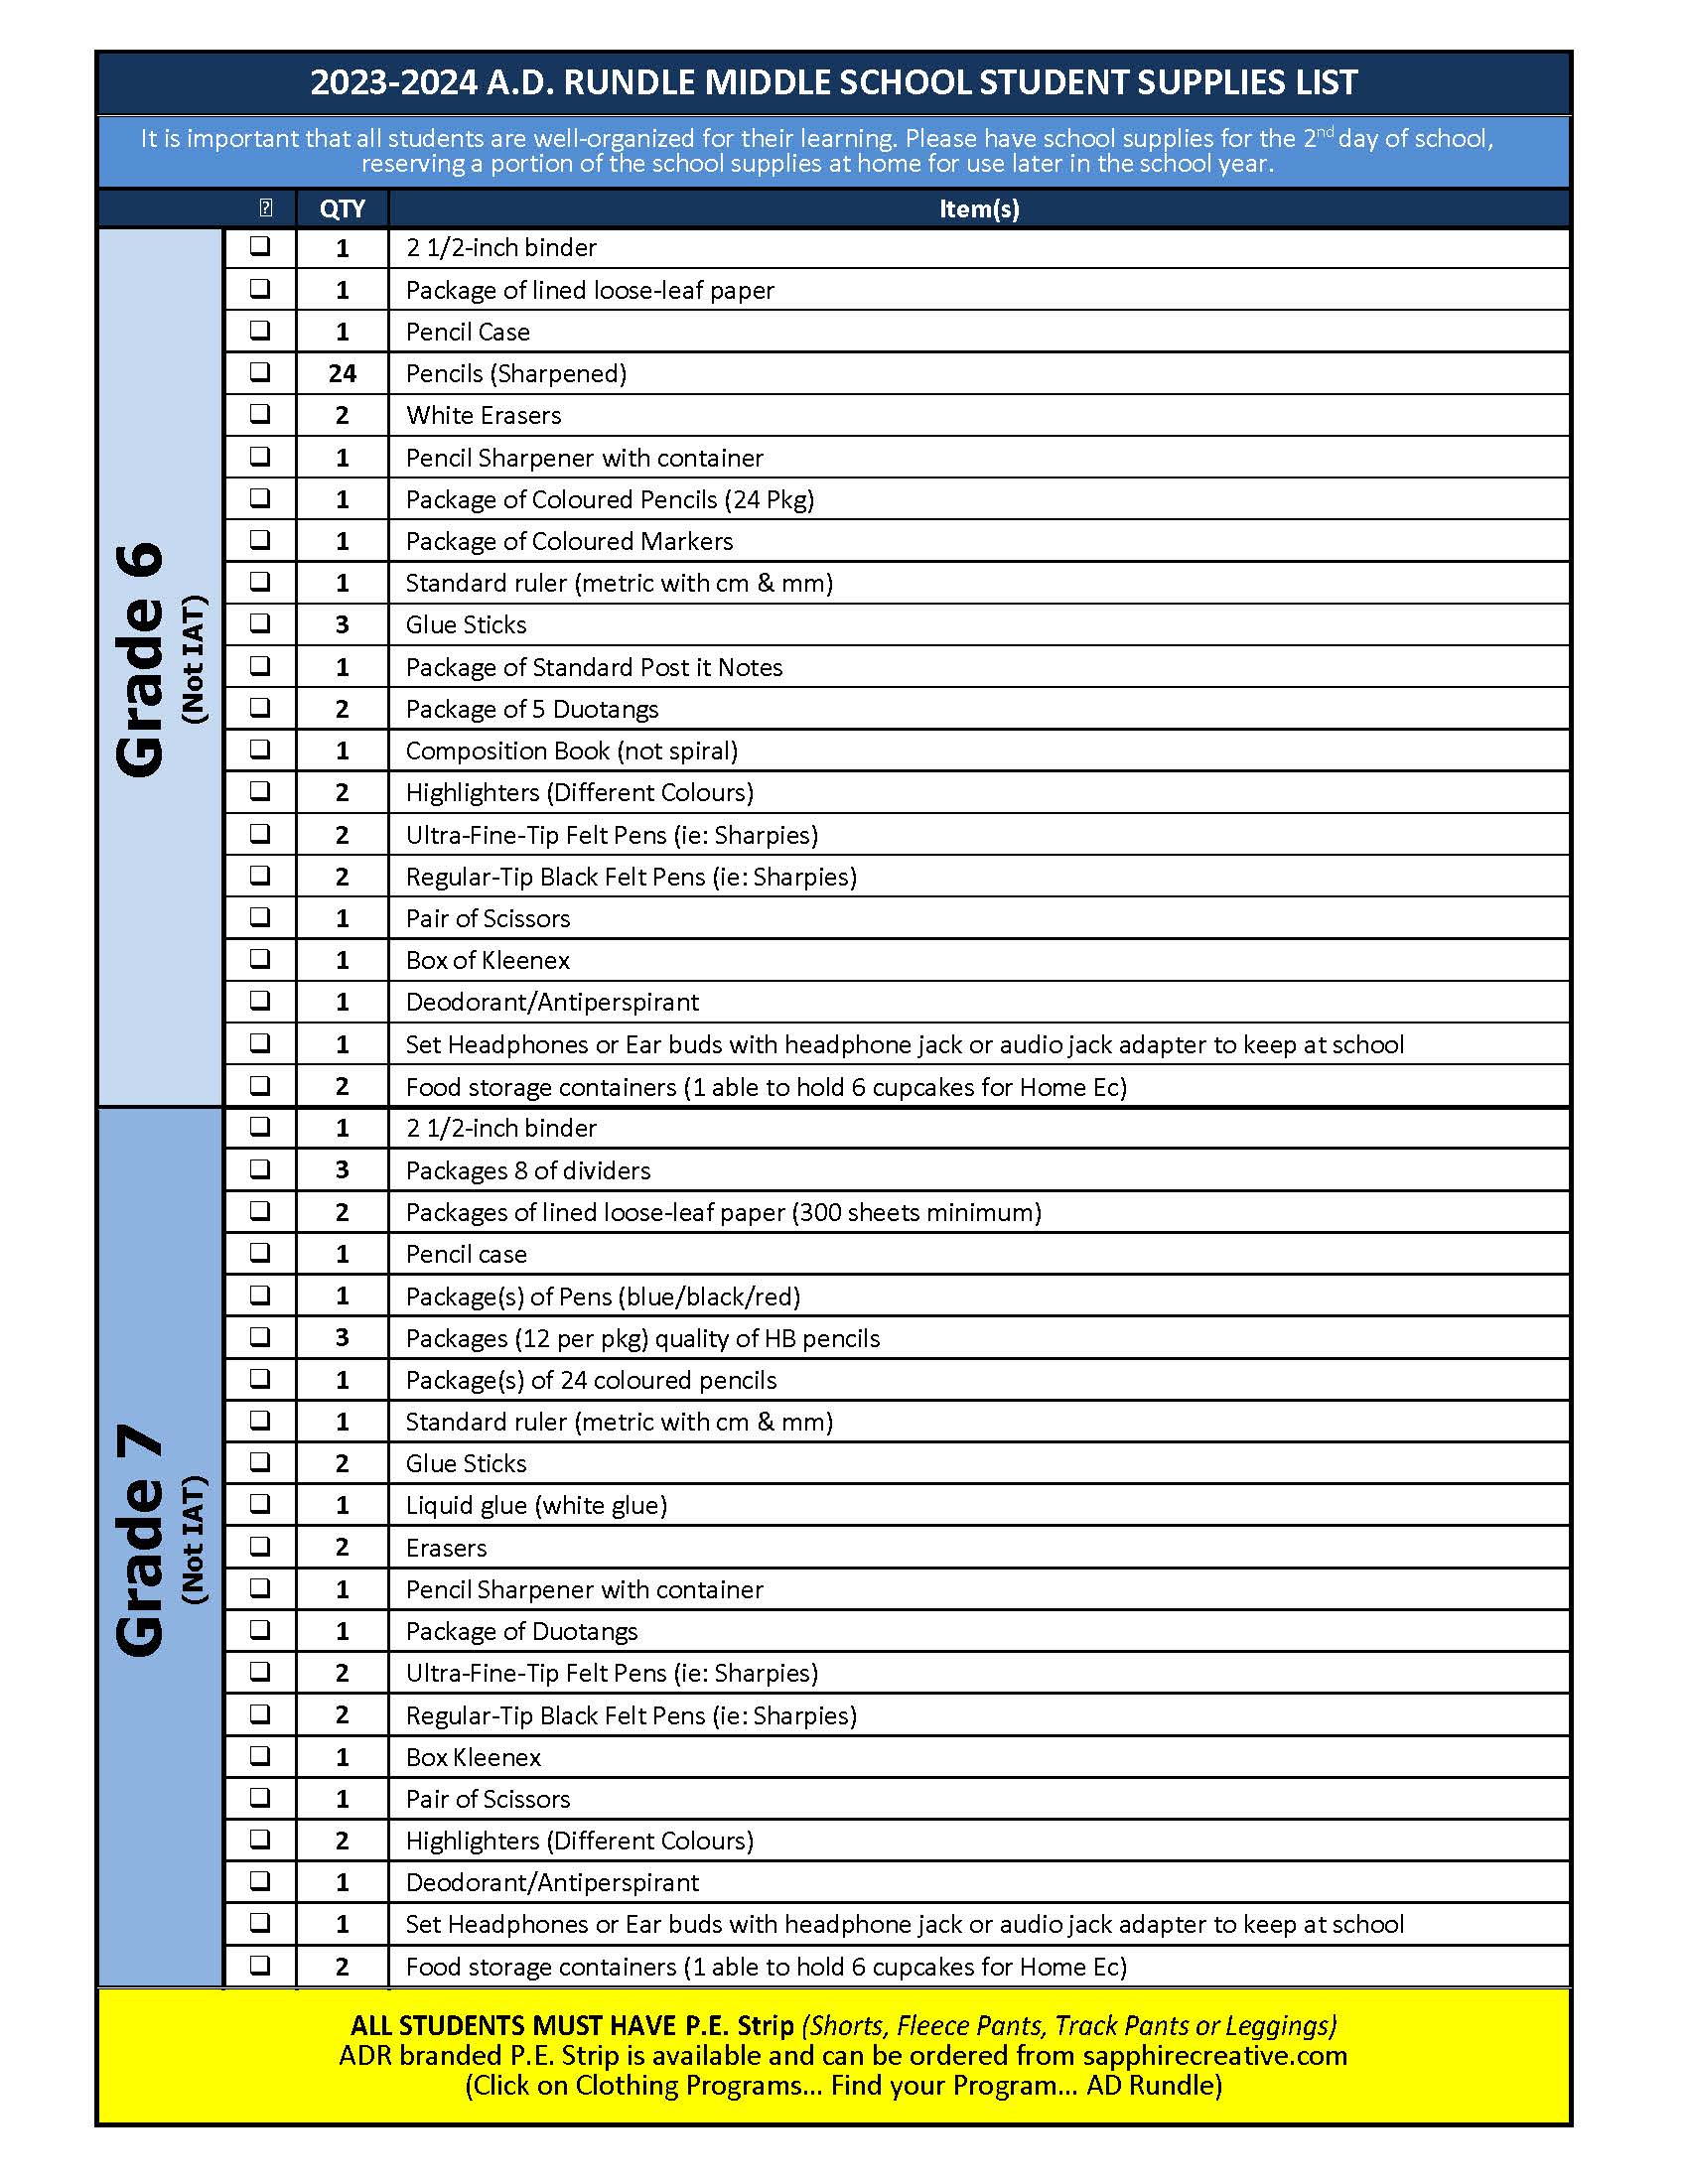 ADR 2023-2024 Schhol Supply List Page 1